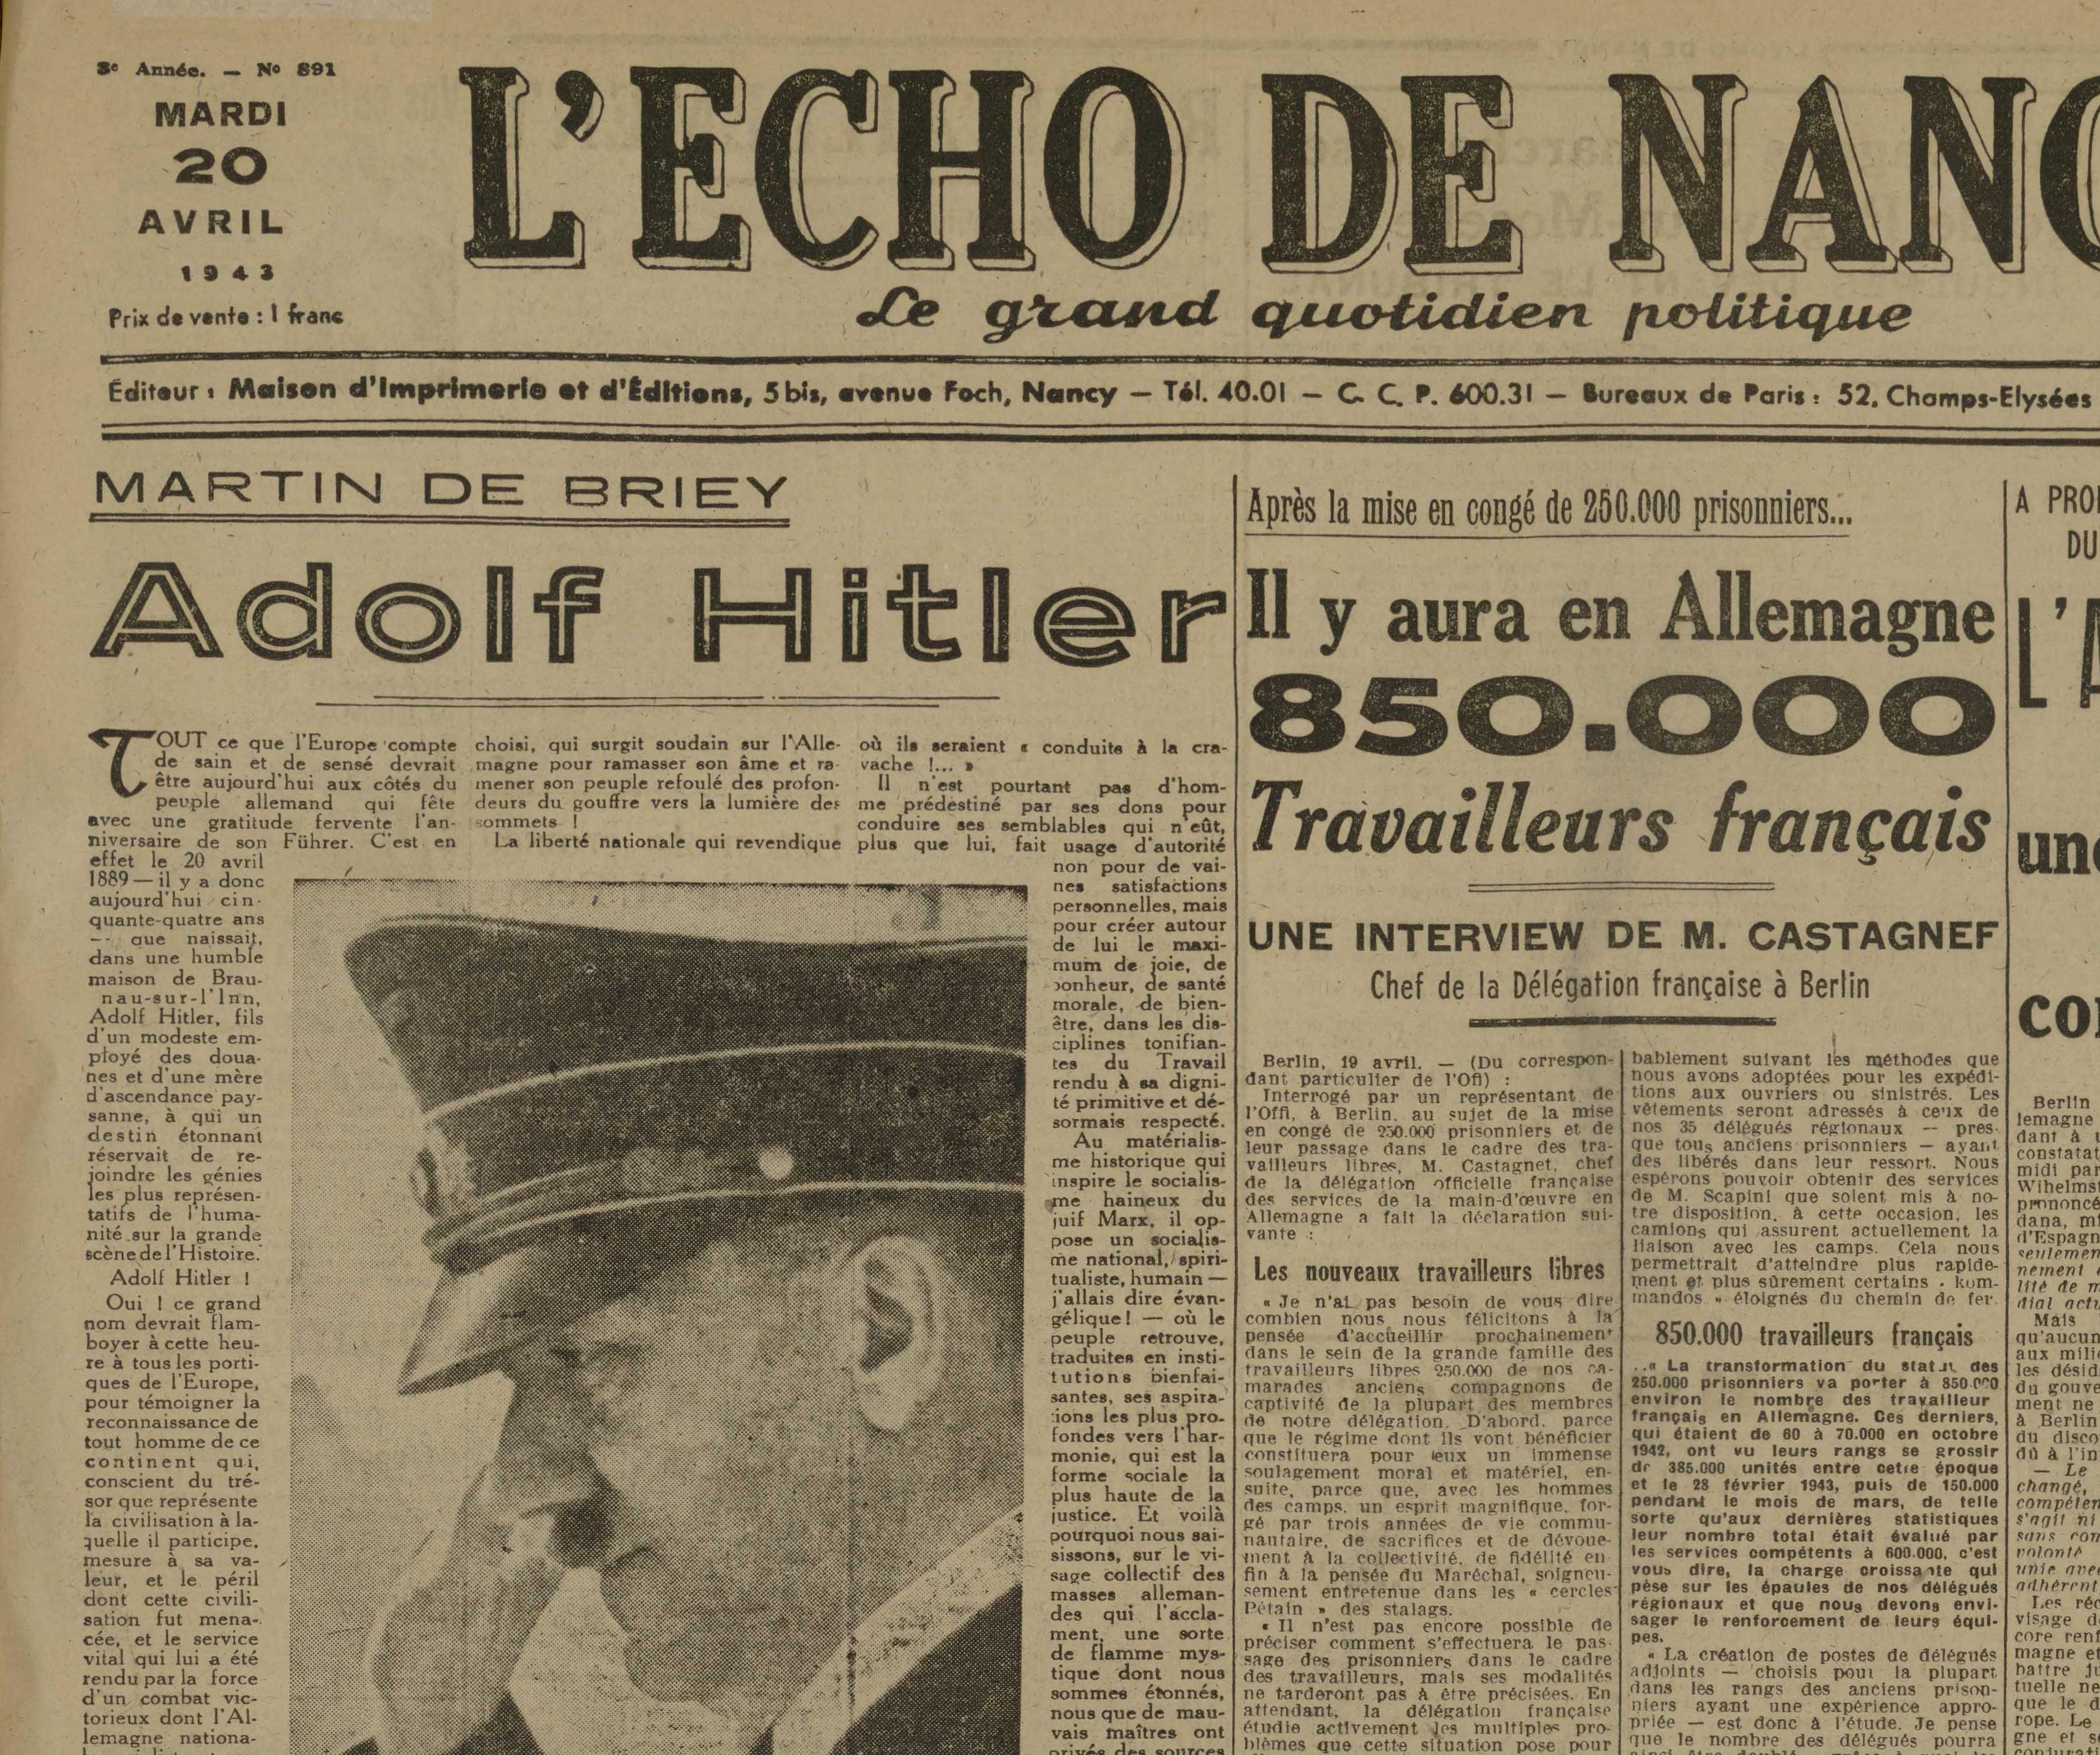 Contenu du Article consacré à Hitler, extrait de l'Écho de Nancy du 20 avril 1943